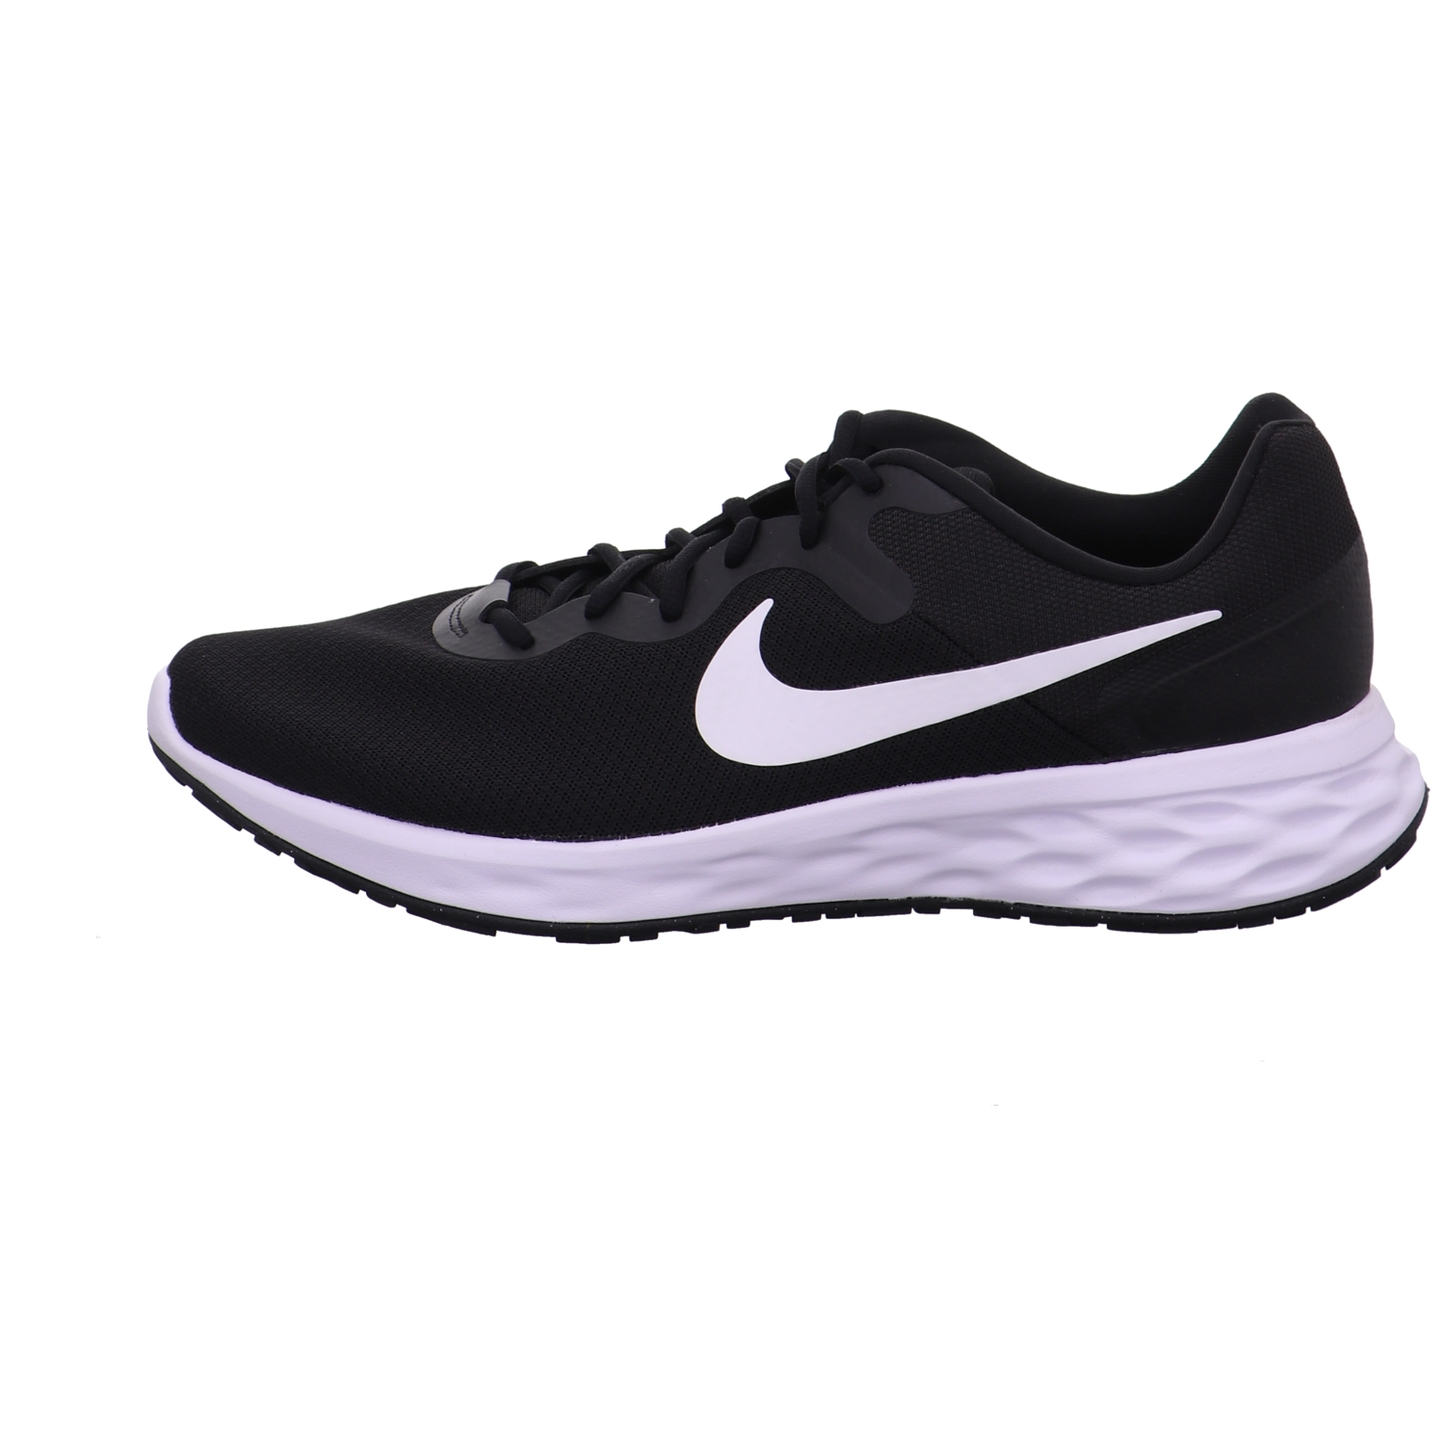 Nike Training und Hallenschuhe schwarz-weiß Bild1